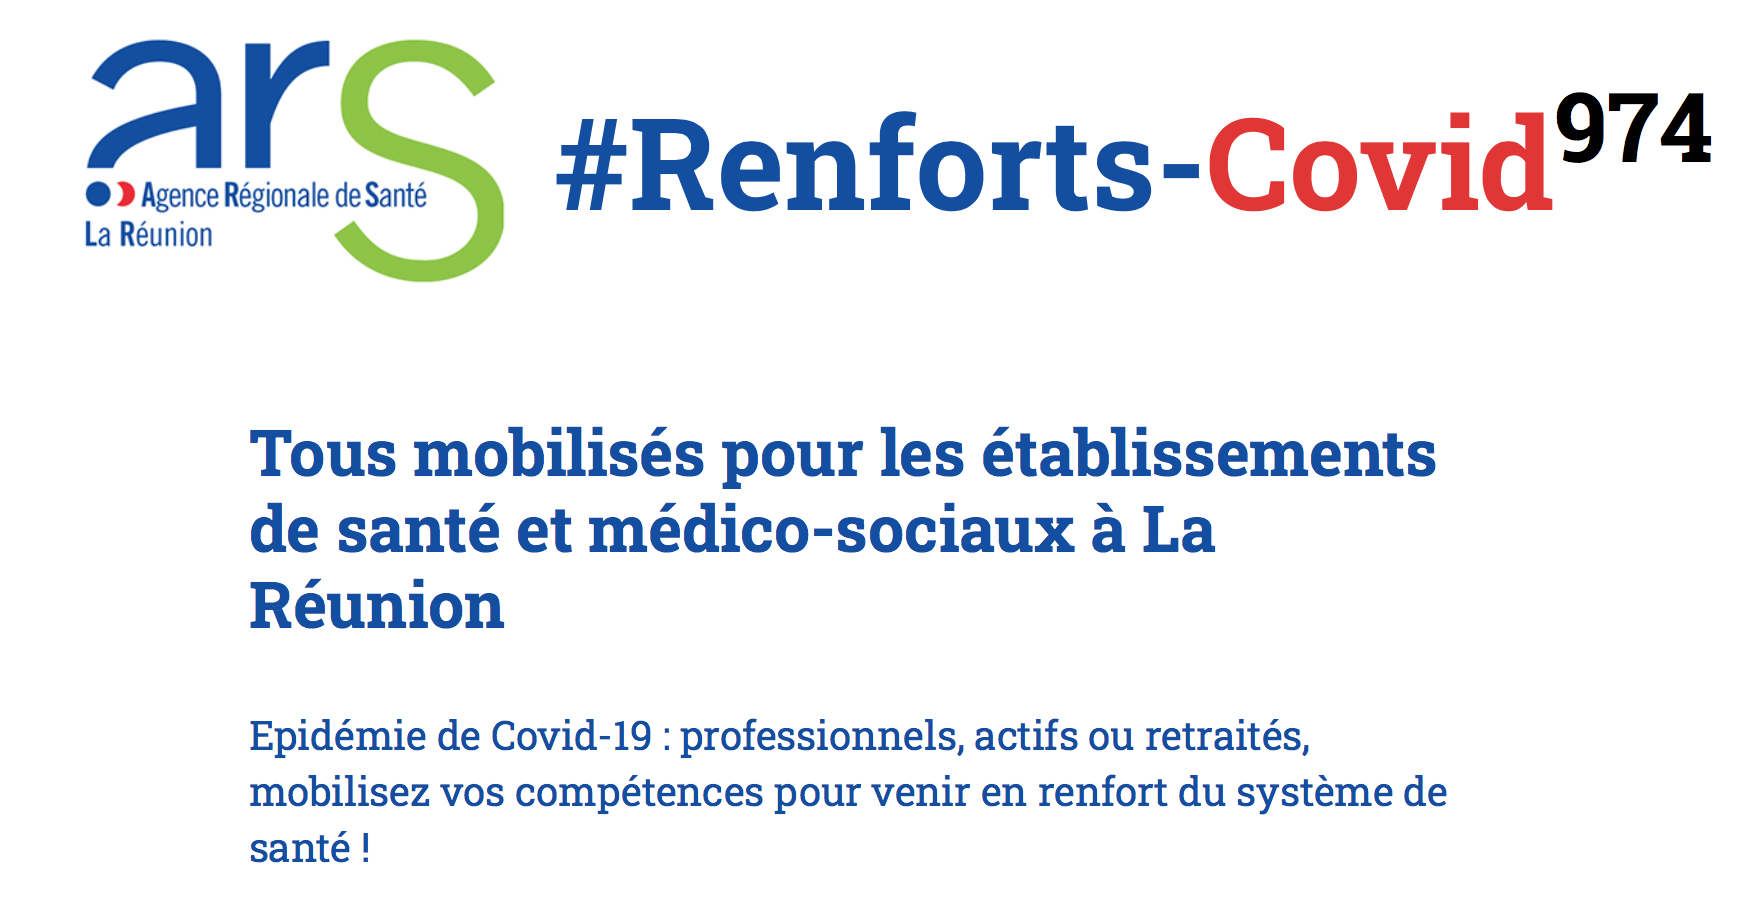 Covid-19- La Réunion : L&rsquo;ARS fait appel à des soignants volontaires sur la plateforme Renforts-Covid 974